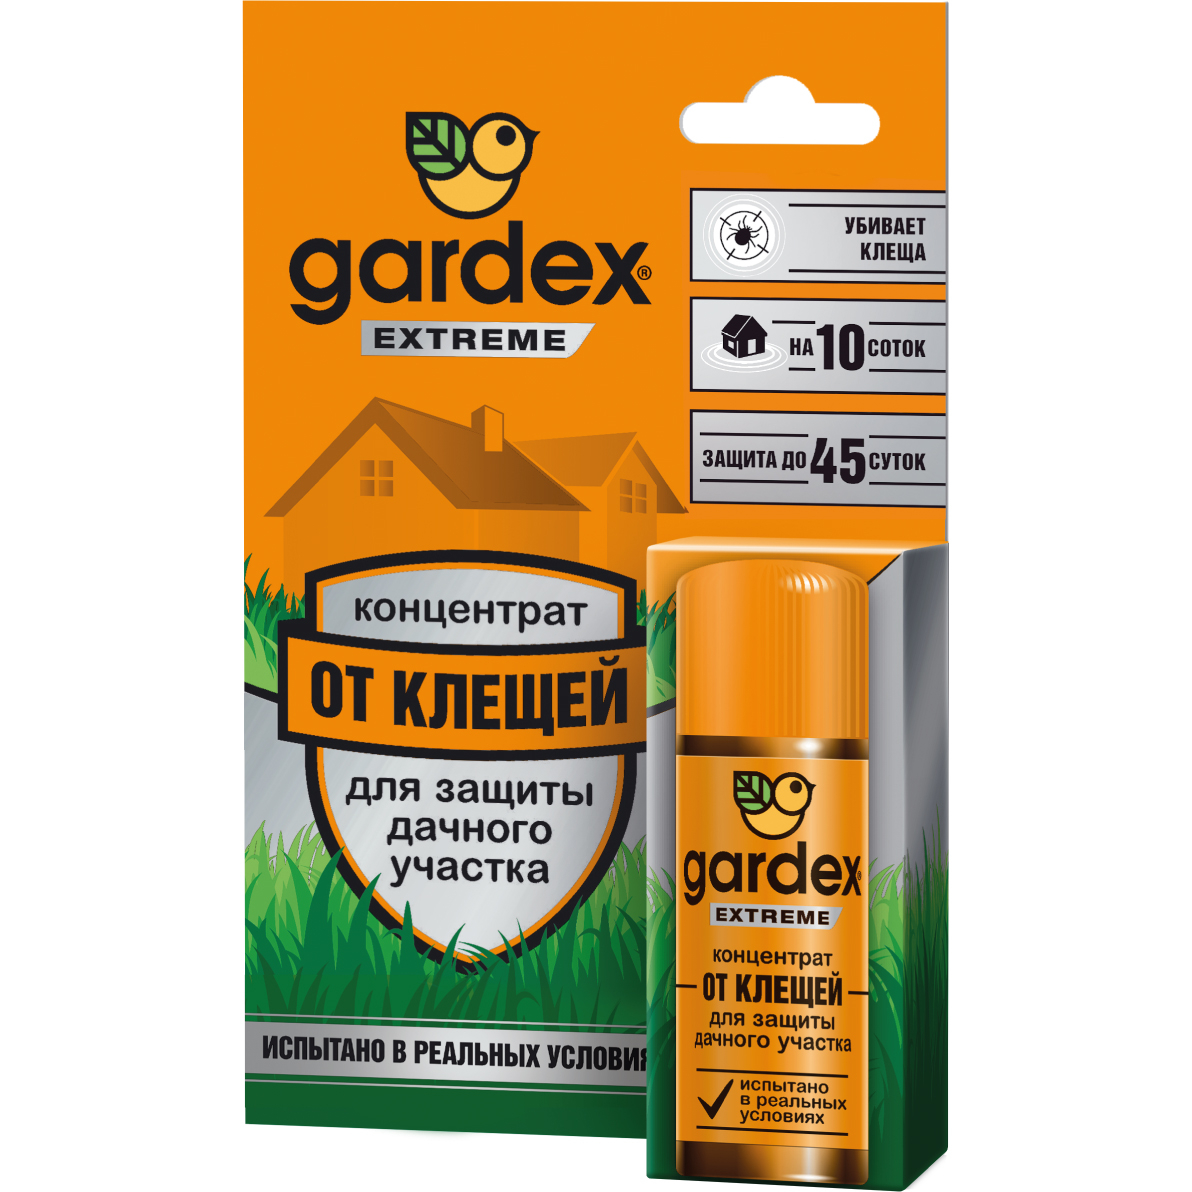 Средство Gardex Extreme концентрат для защиты дачного участка от клещей концентрат для защиты дачного участка от клещей gardex